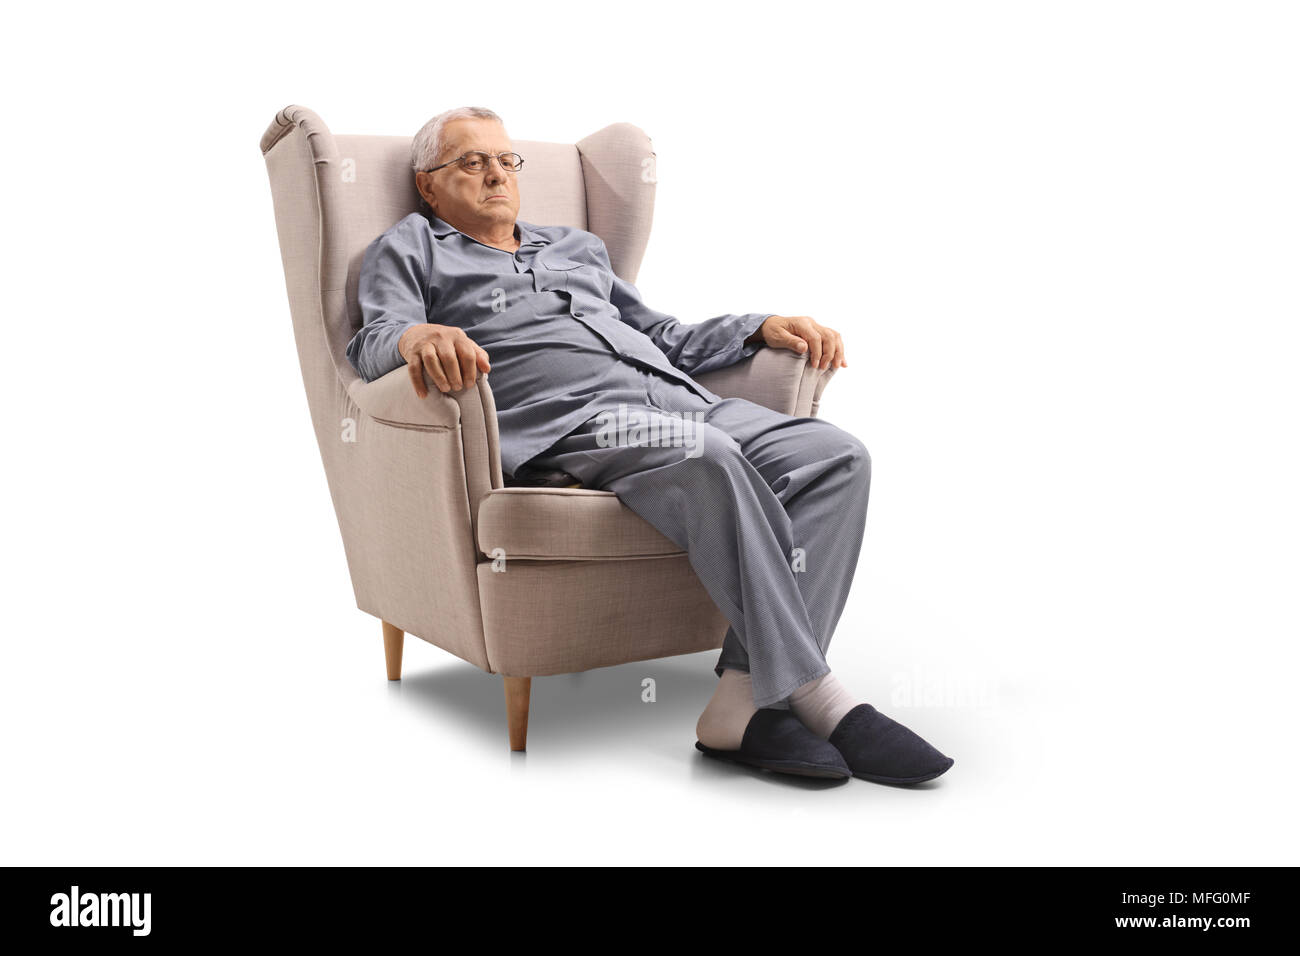 Grumpy Old man en pyjama assis dans un fauteuil isolé sur fond blanc Banque D'Images